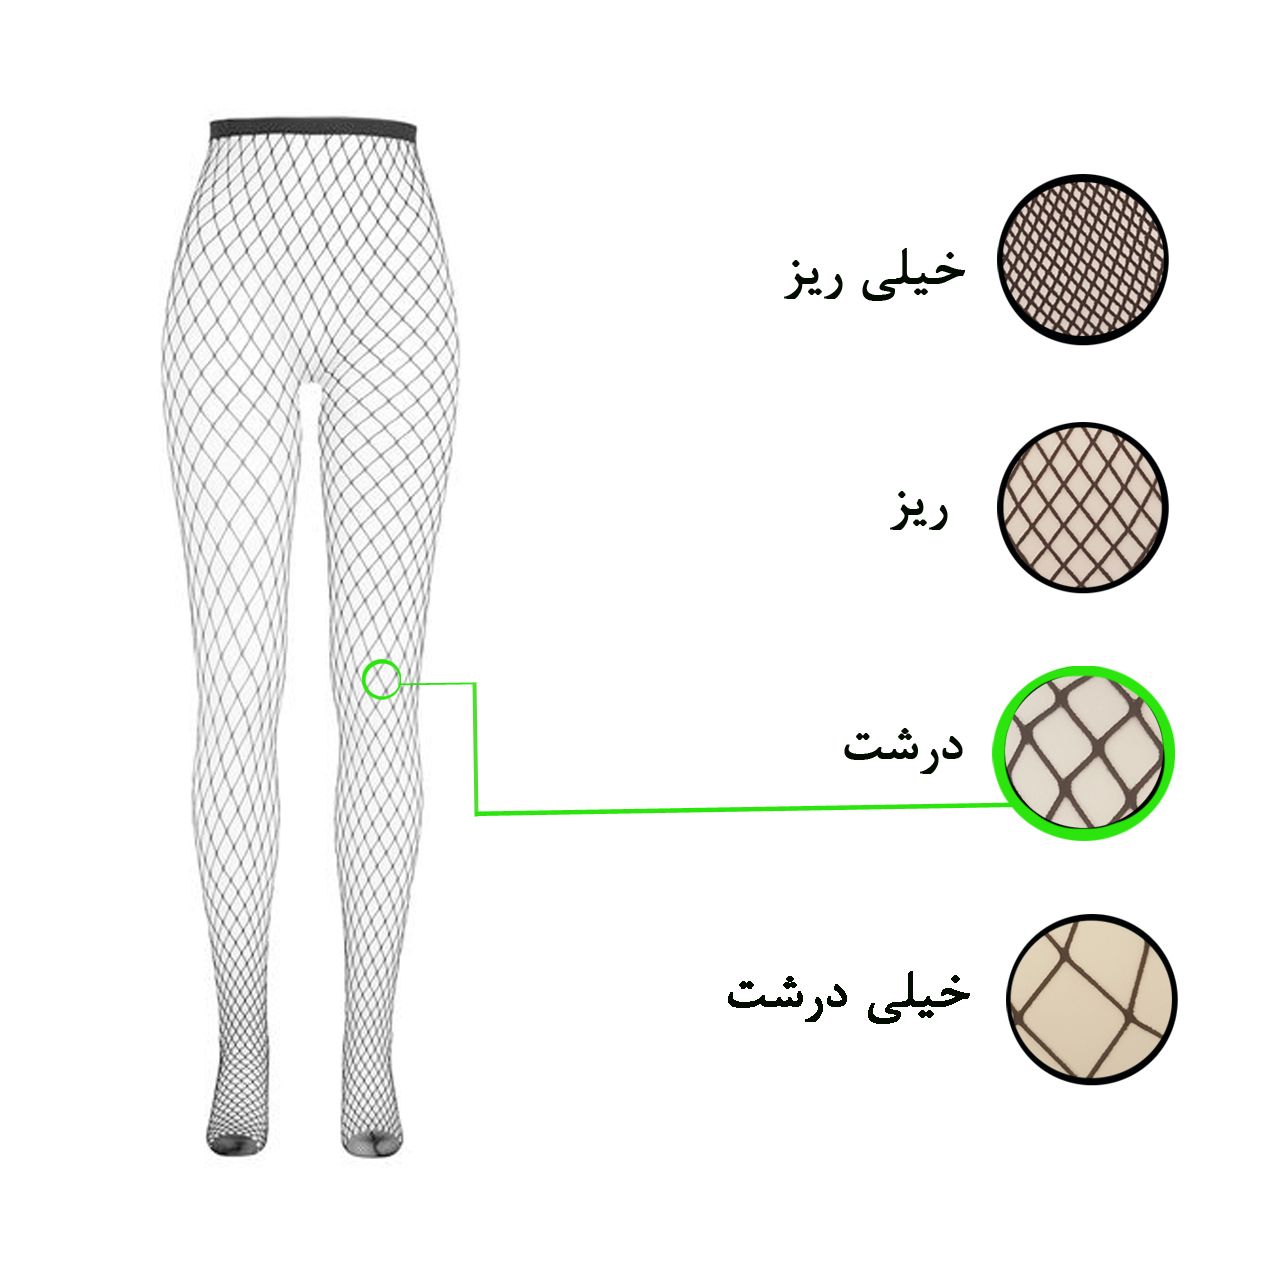 جوراب شلواری زنانه ال سون کد PH430 -  - 6